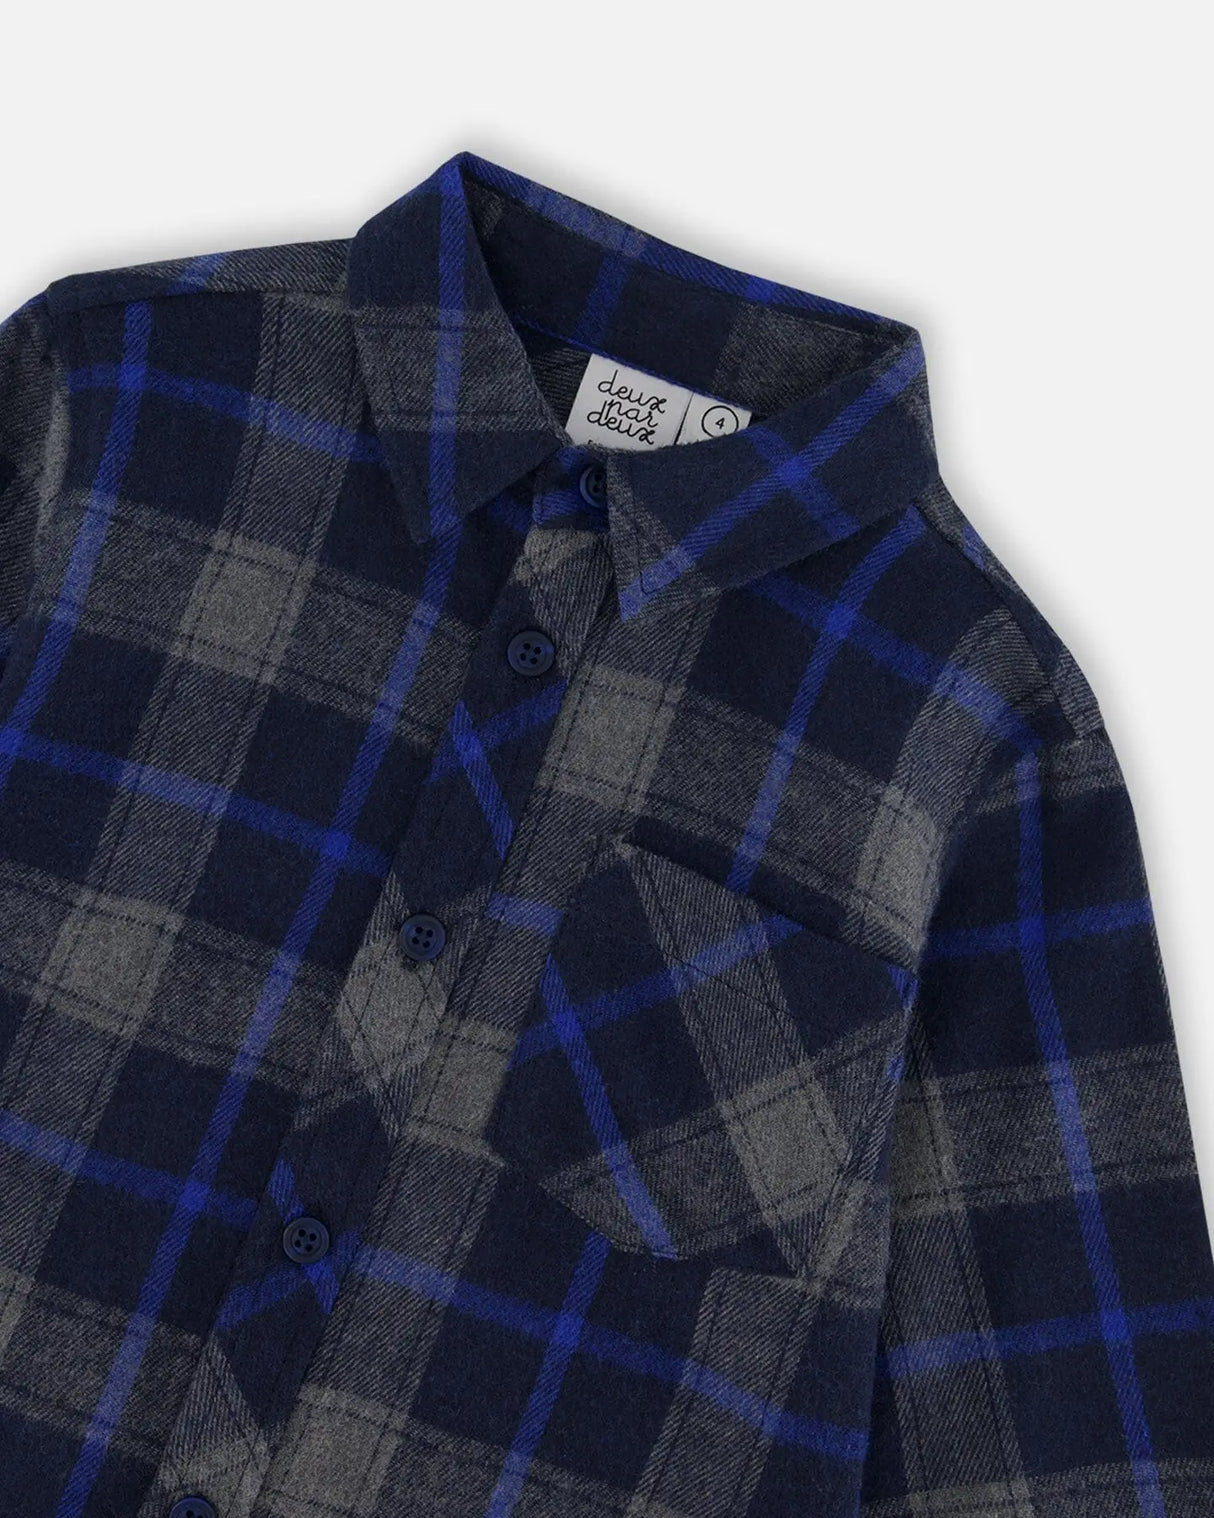 Button Down Flannel Shirt With Pocket Plaid Navy And Gray | Deux par Deux | Jenni Kidz